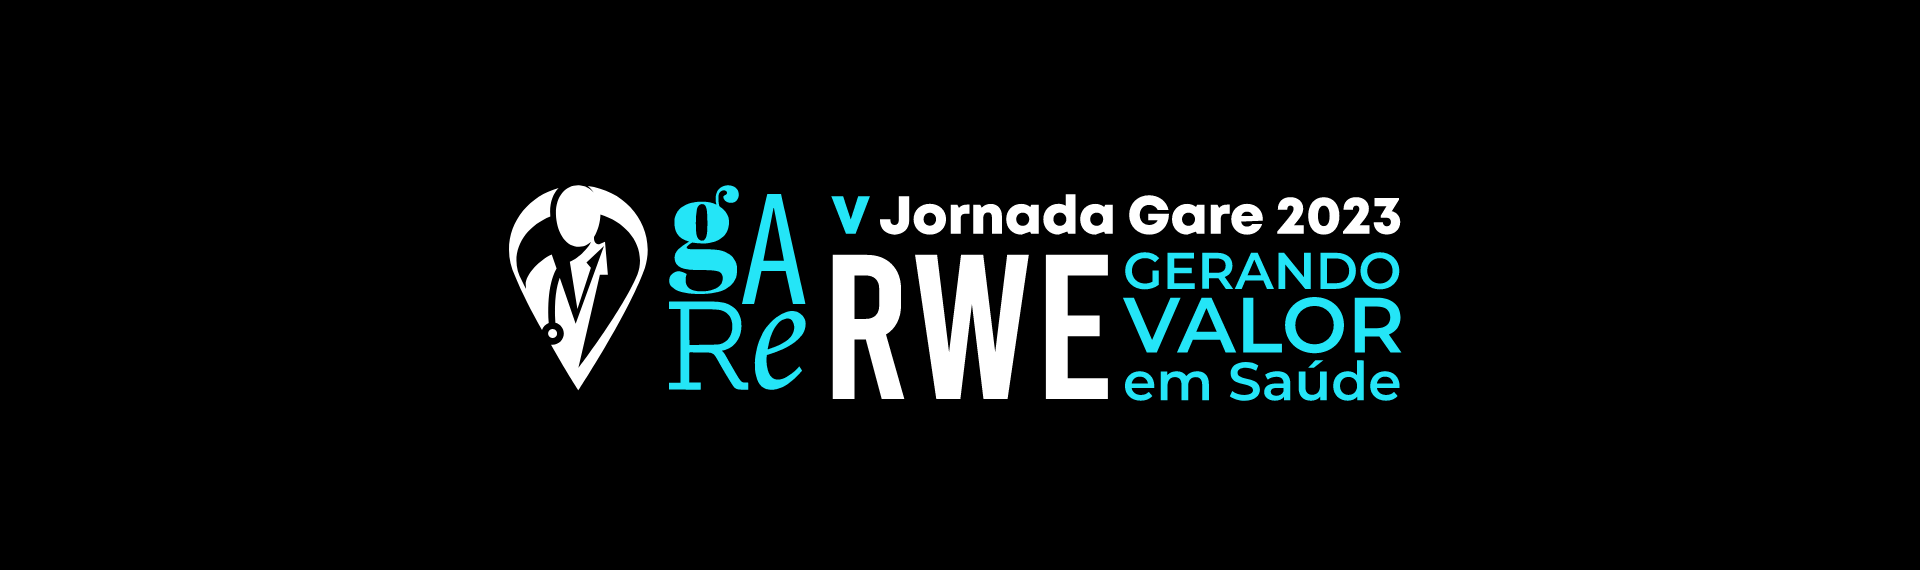 V Jornada Gare - RWE 2023 - Médico Exponencial EMS